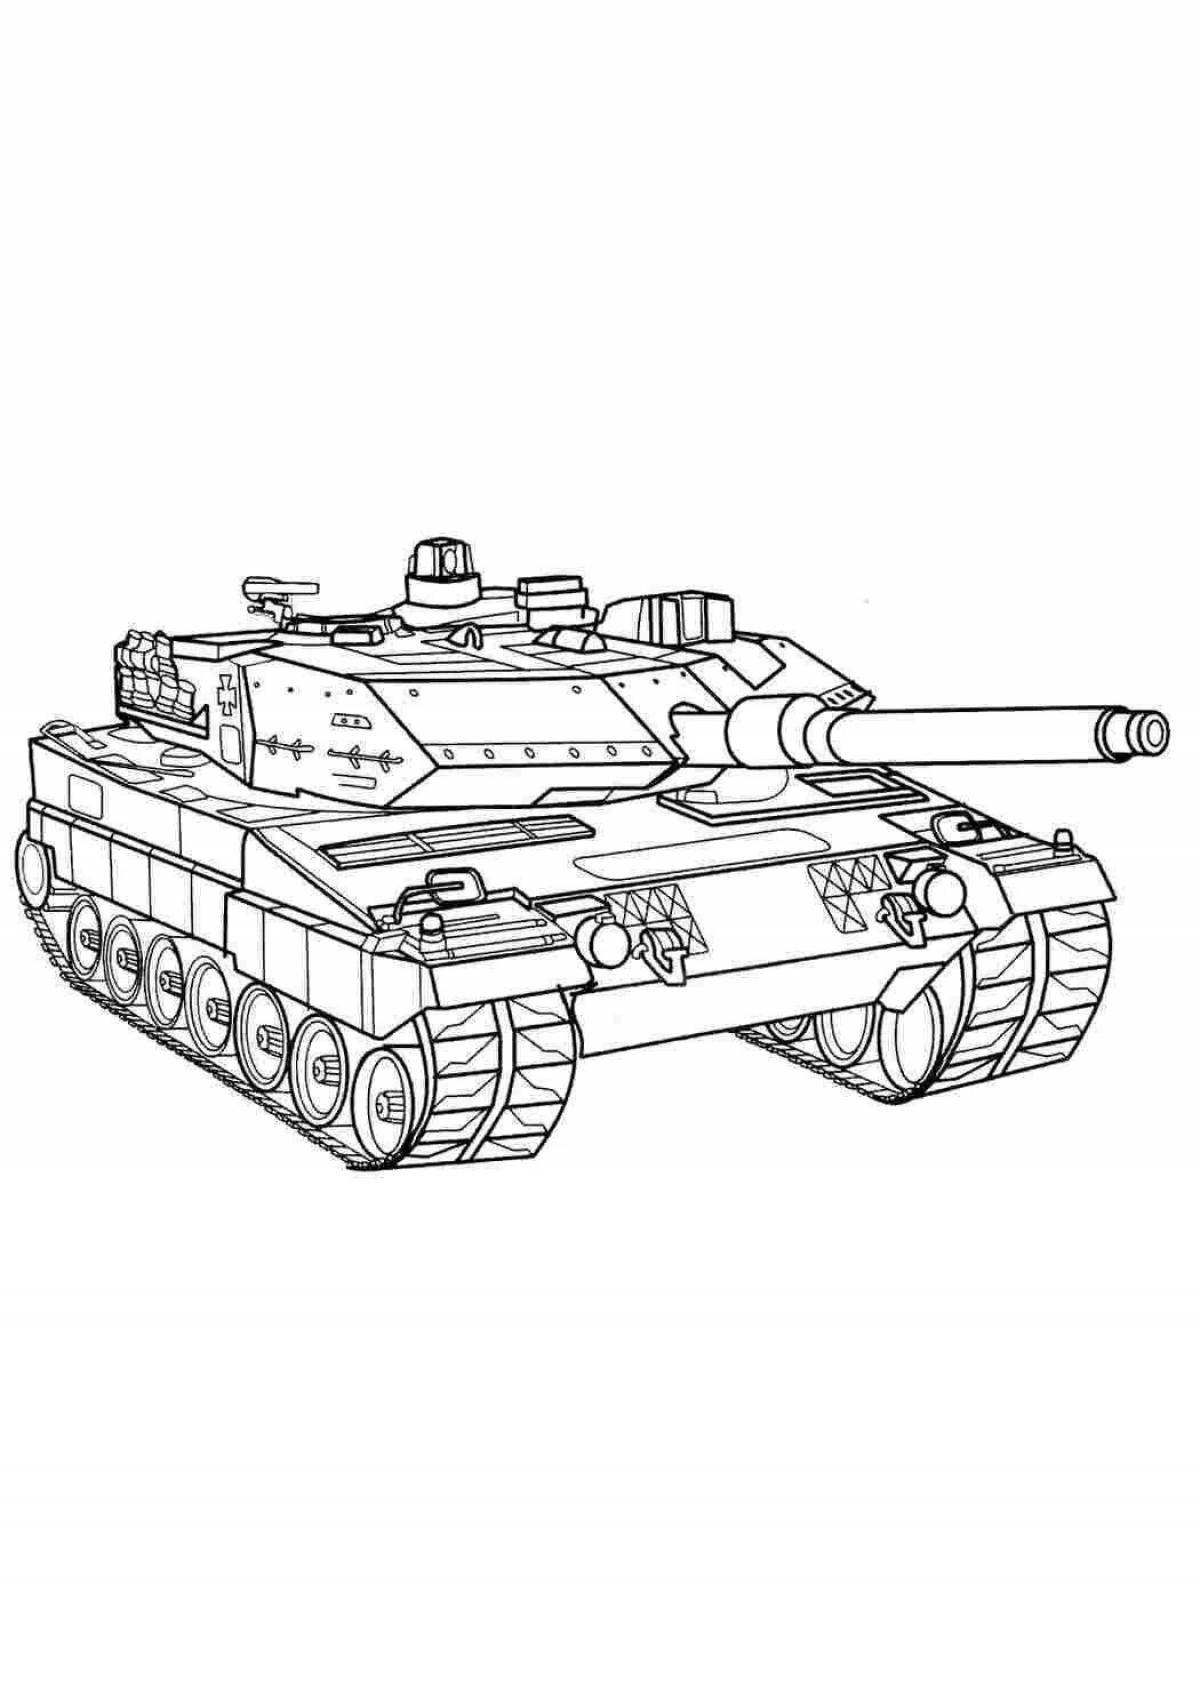 Анимированная страница раскраски танка abrams